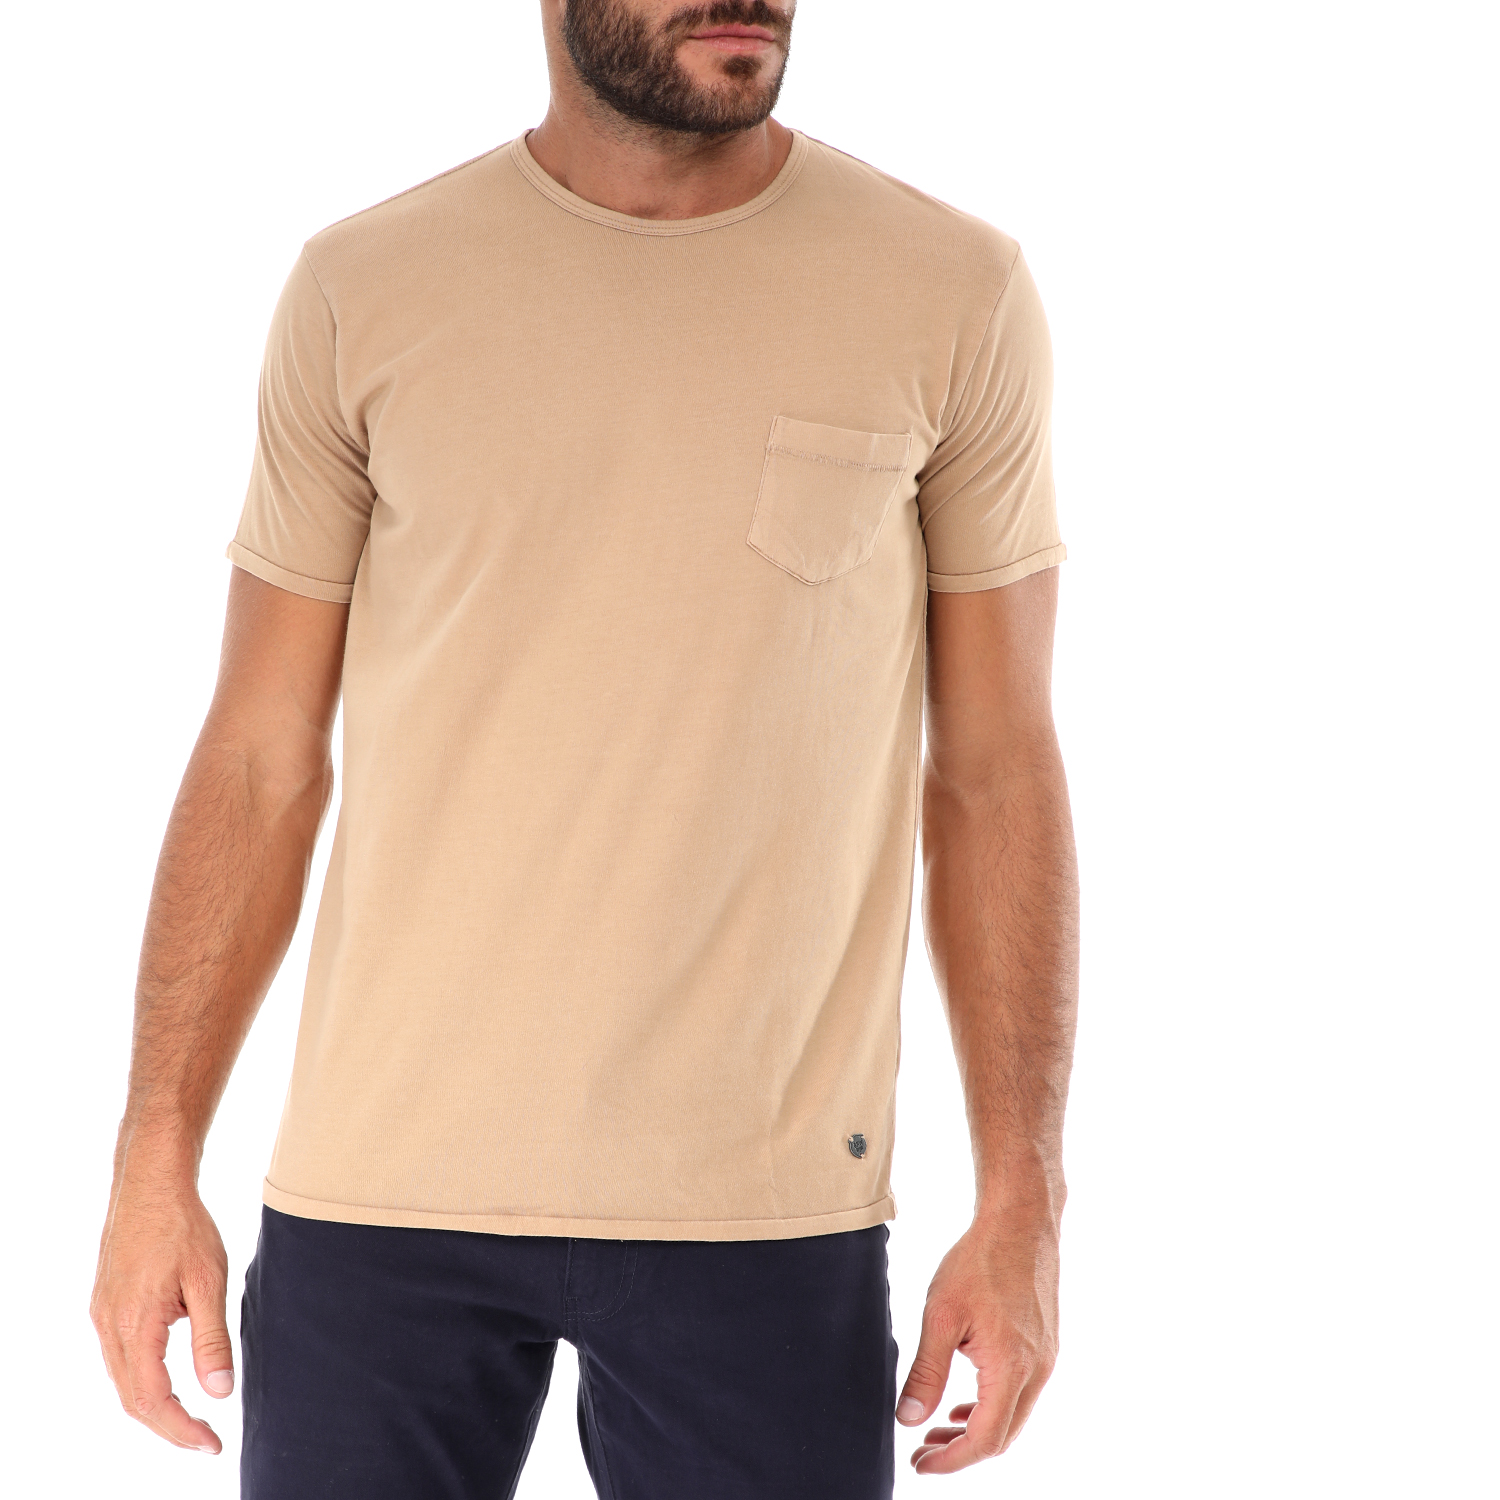 Ανδρικά/Ρούχα/Μπλούζες/Κοντομάνικες GREENWOOD - Ανδρικό t-shirt GREENWOOD μπεζ